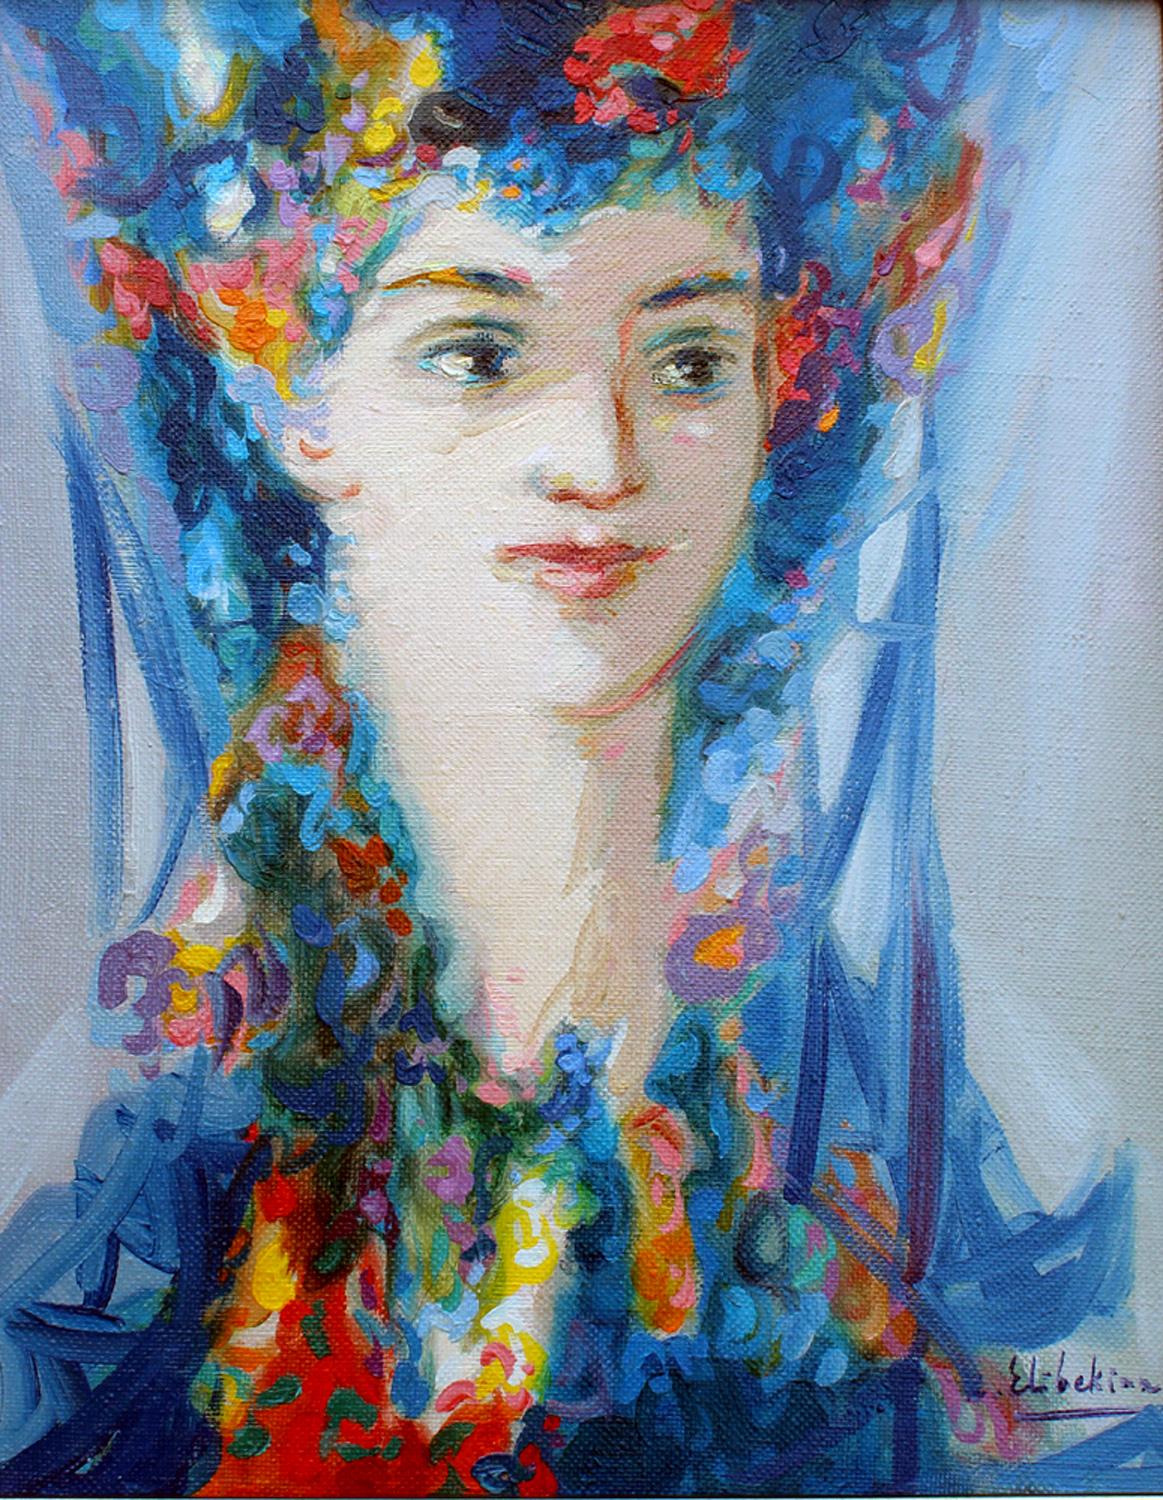 Maral, 20"x16", oil on canvas 